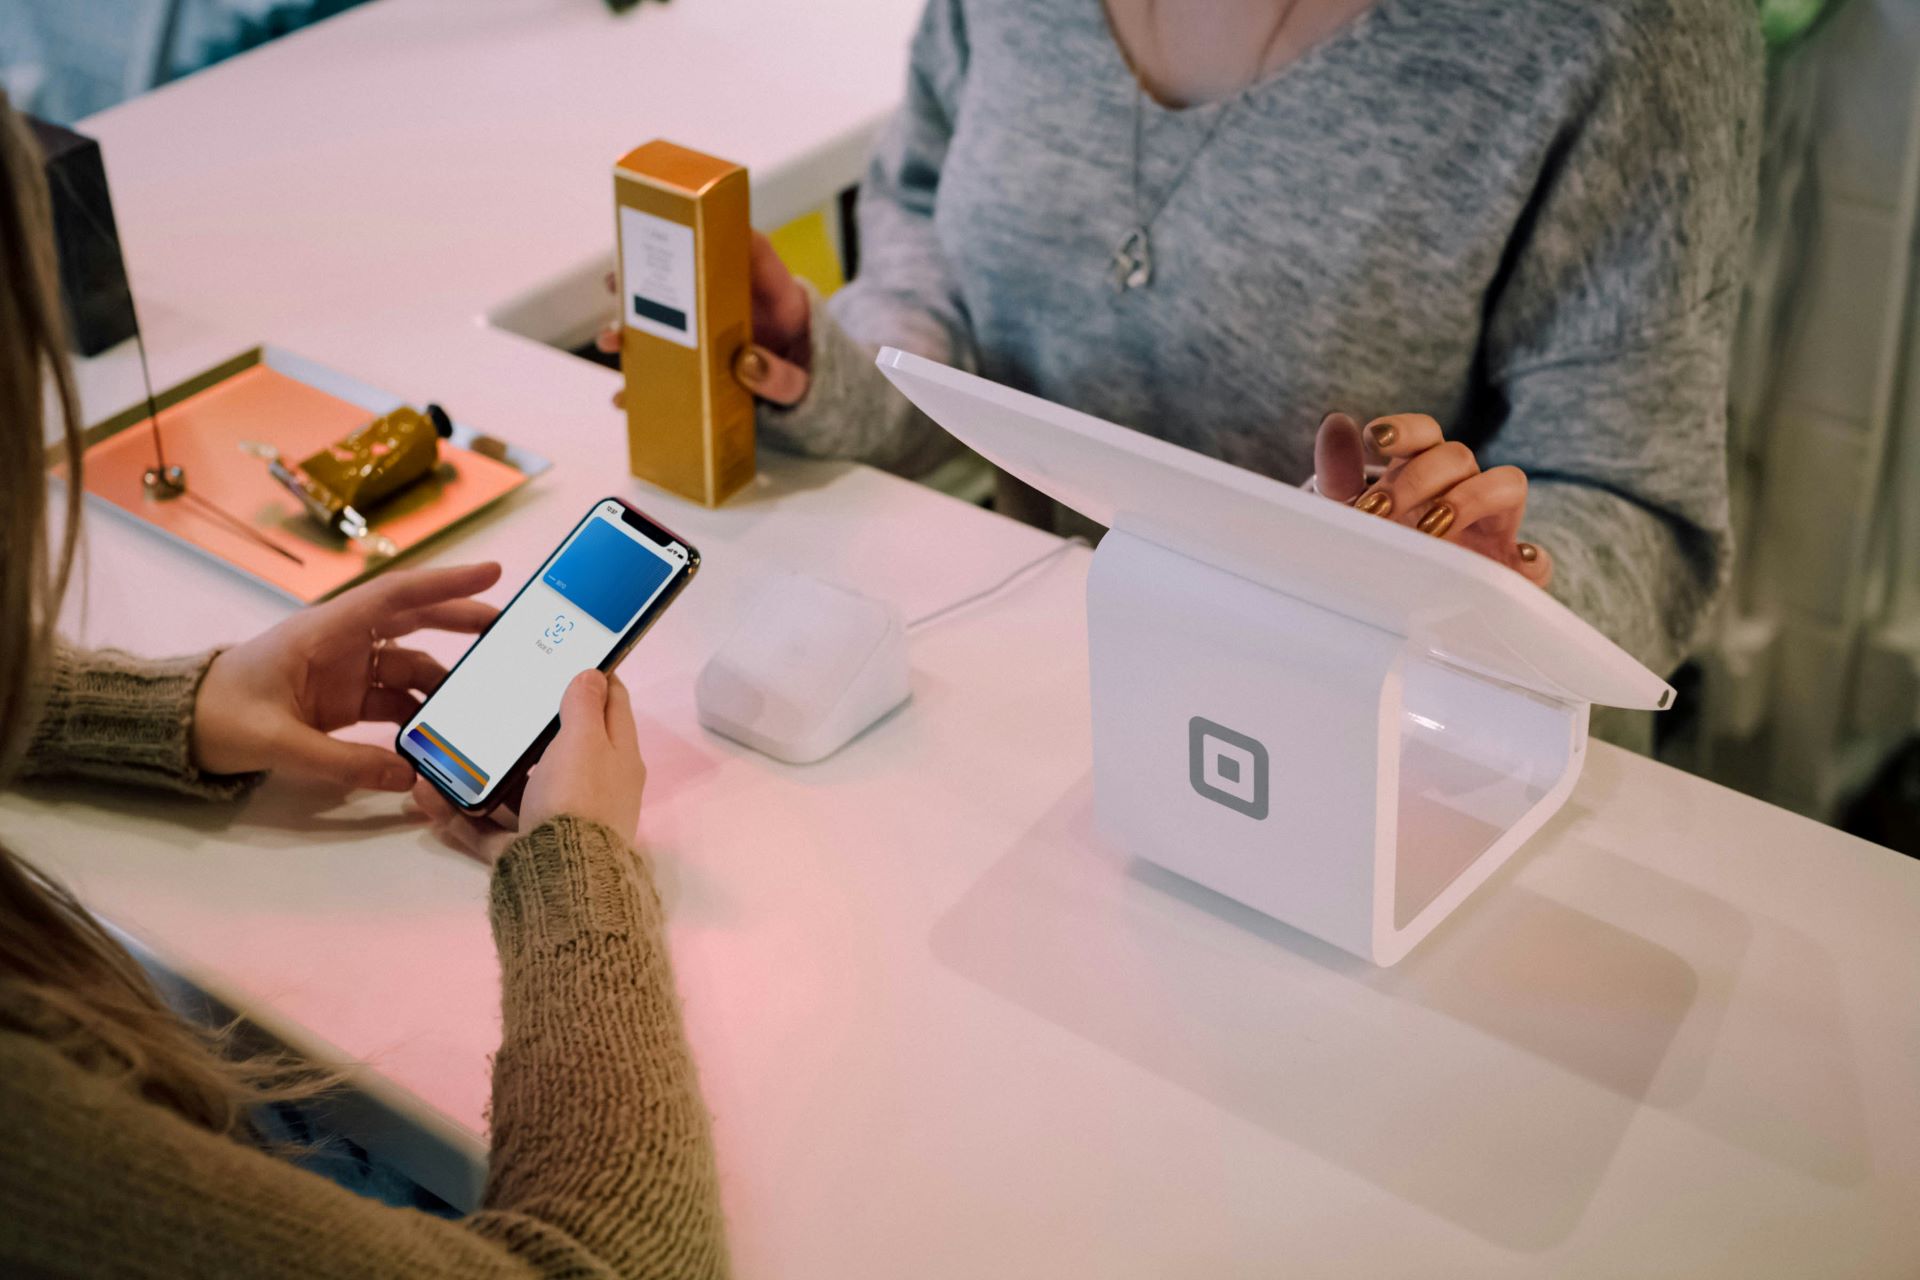 Iphone đang mở Apple Pay đang cố gắng thanh toán trên thiết bị đầu cuối thanh toán NFC